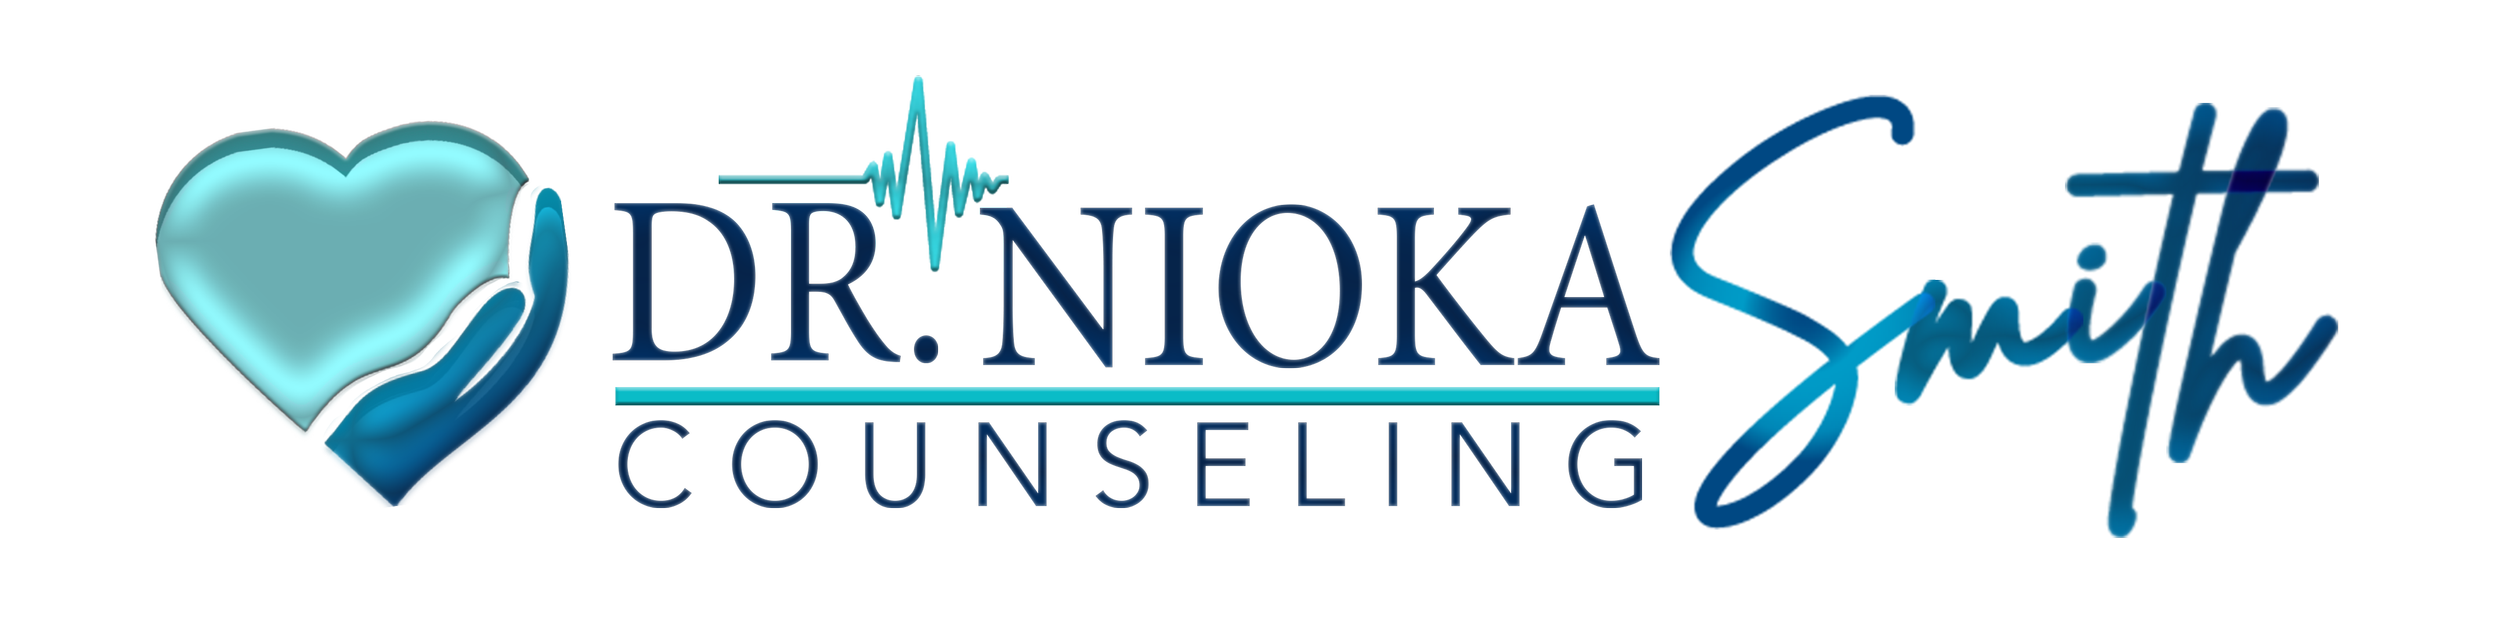 Dr. Nioka Smith Counseling